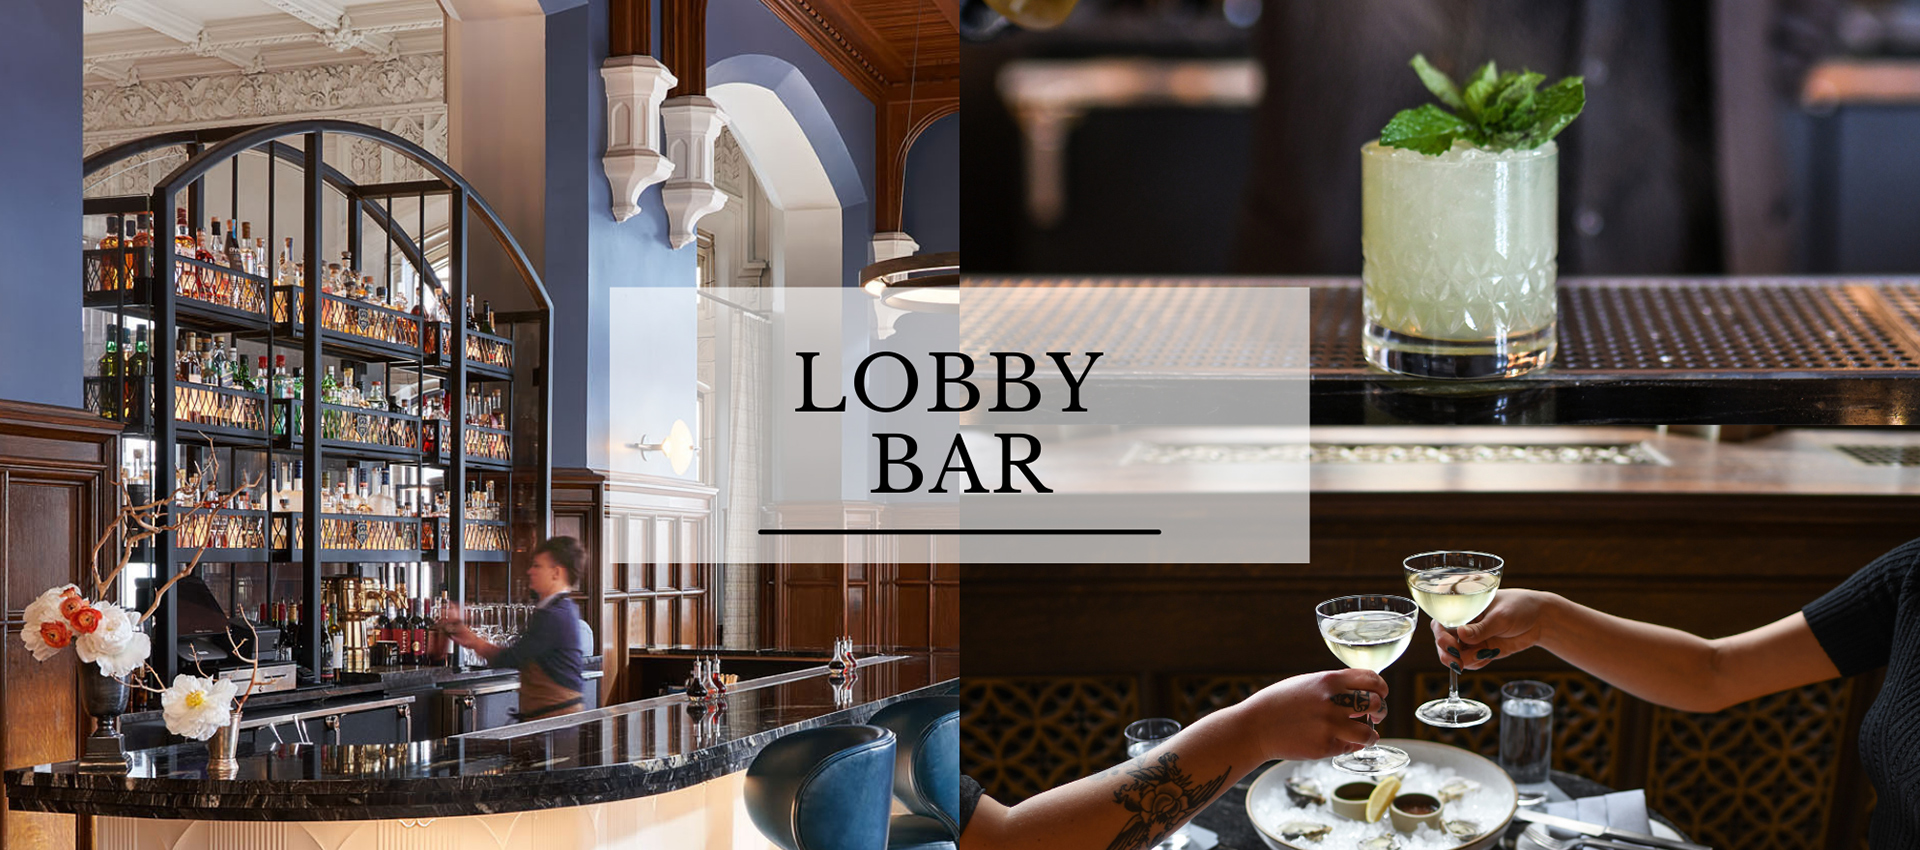 Lobby Bar At Hotel Kansas City.